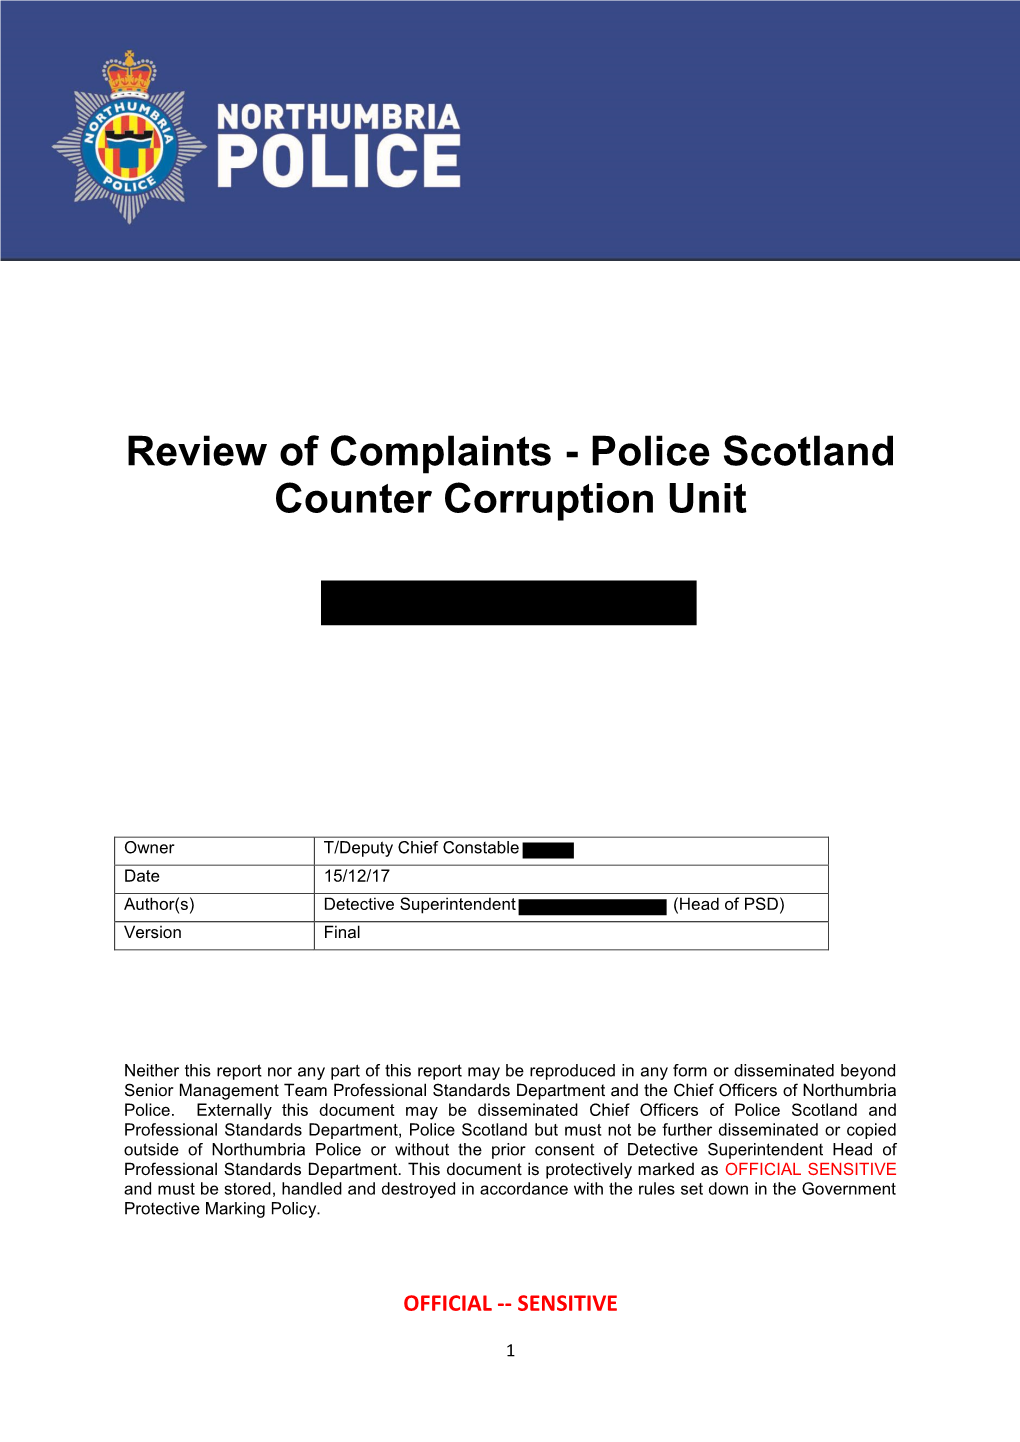 Police Scotland Counter Corruption Unit